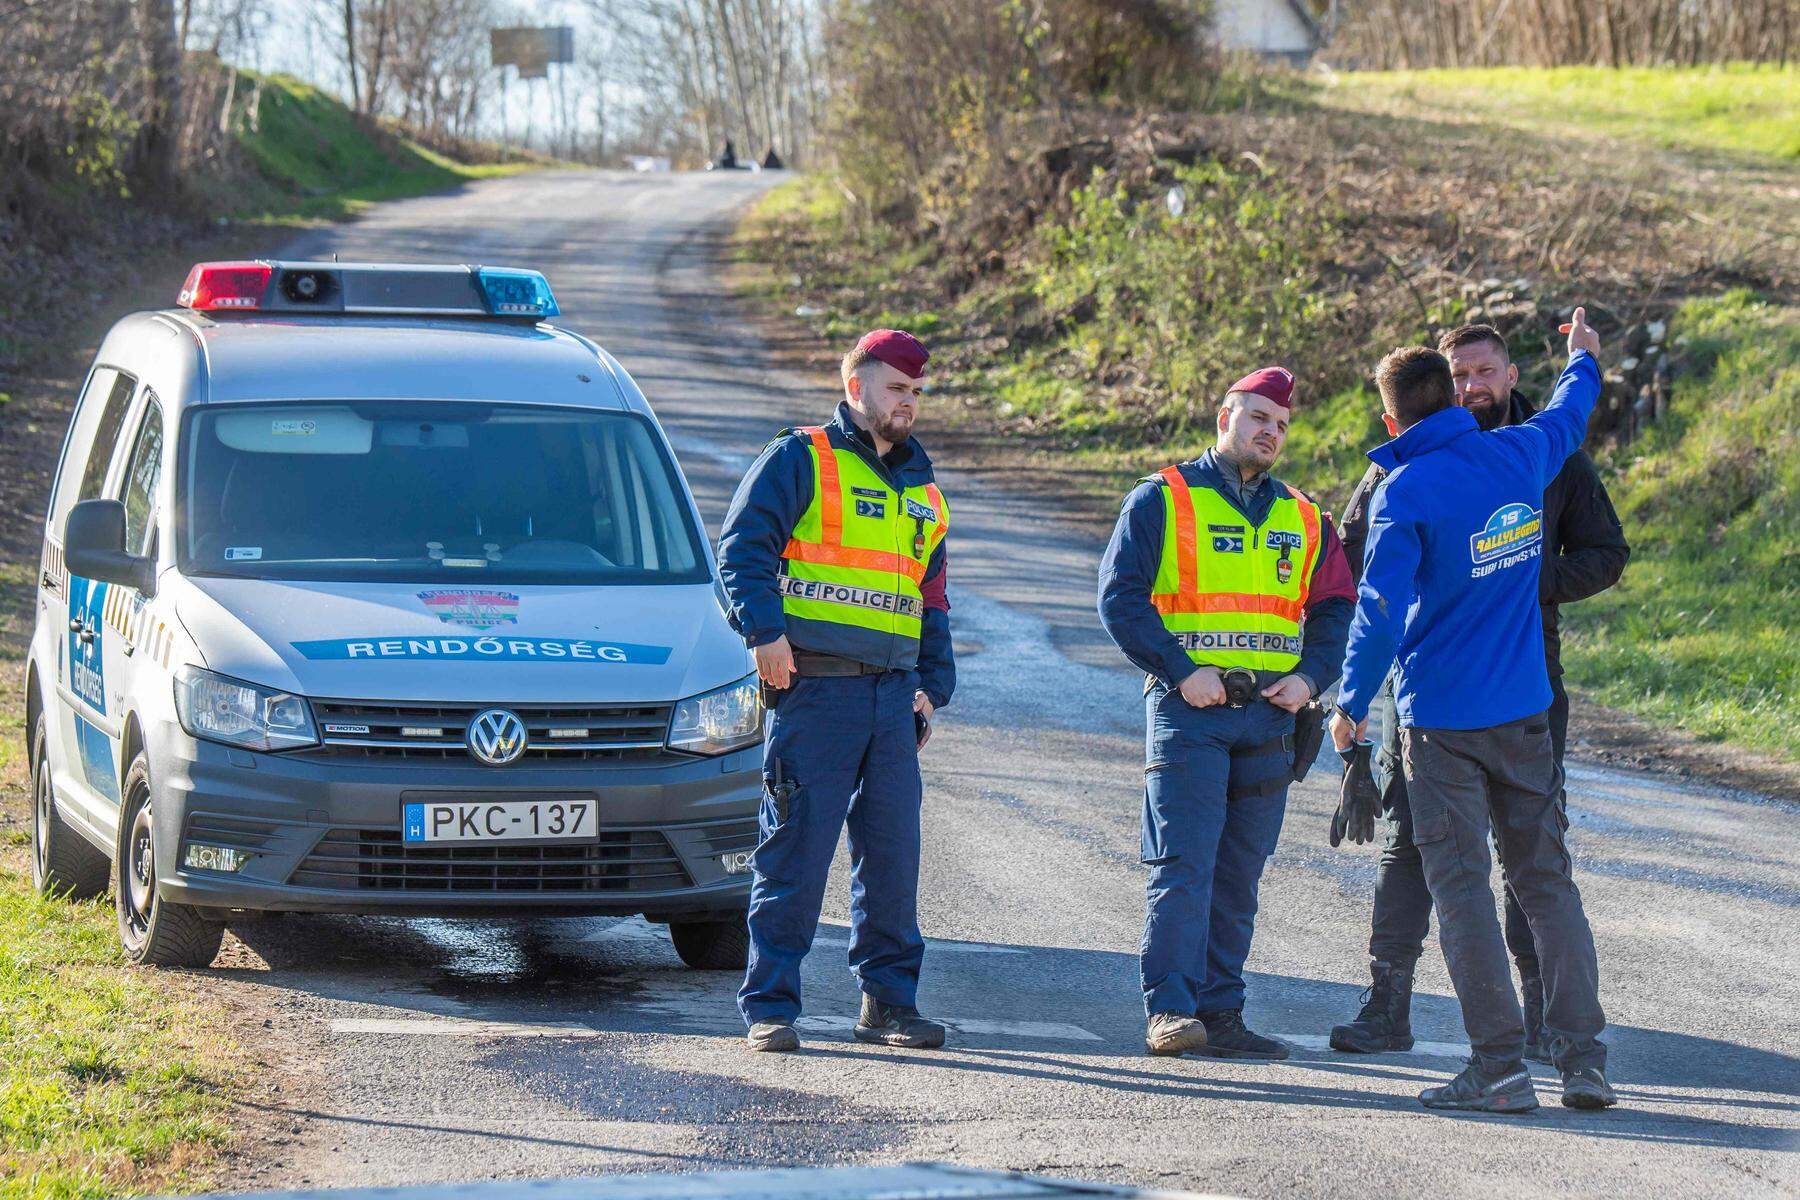 Unglück in Ungarn: Rallye-Auto fuhr in Zuschauer – vier Tote, ein Kind schwerverletzt